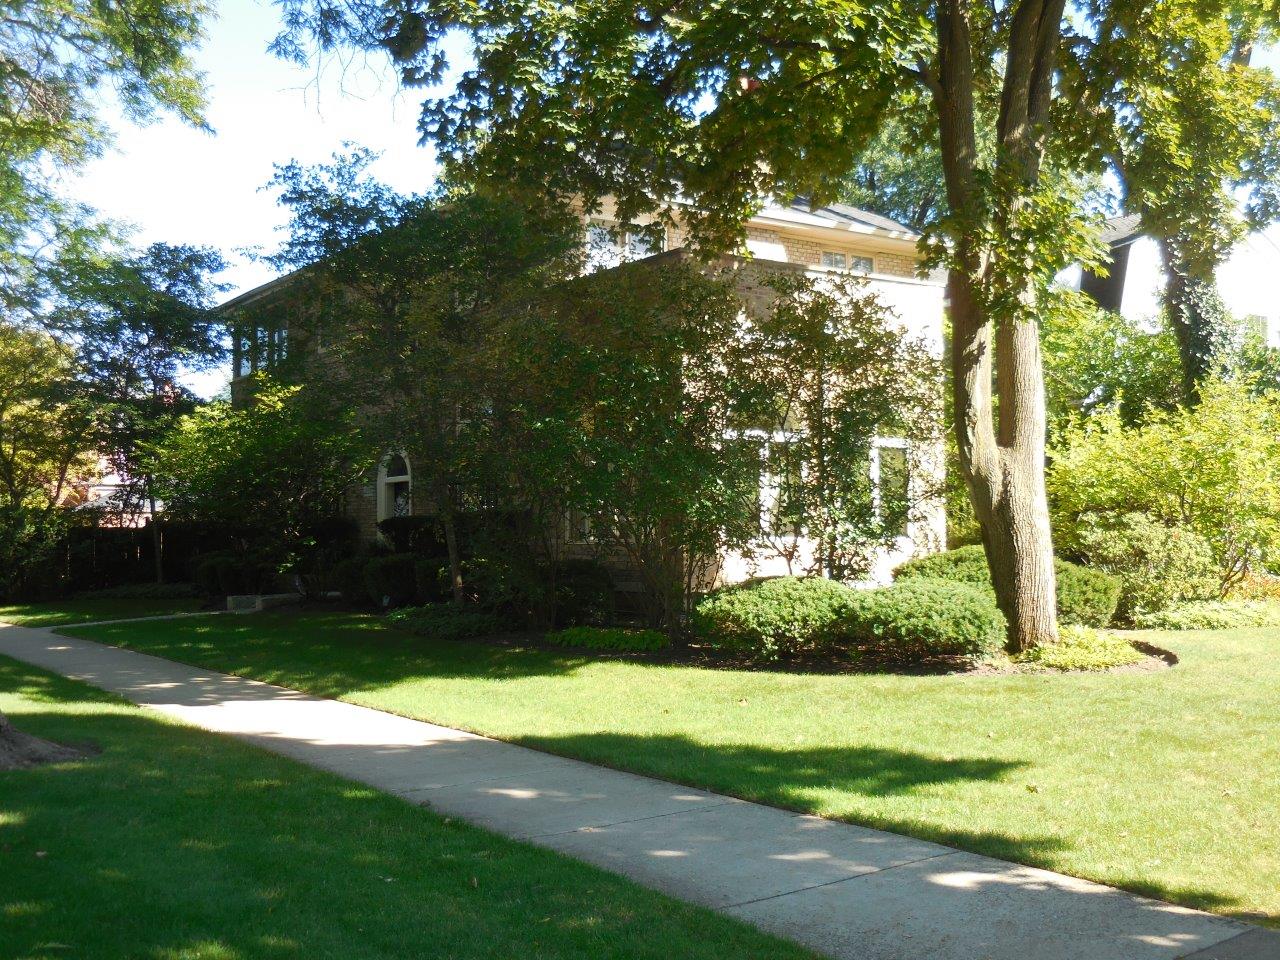 Hillary Rodham Clinton house in Park Ridge, Illinois